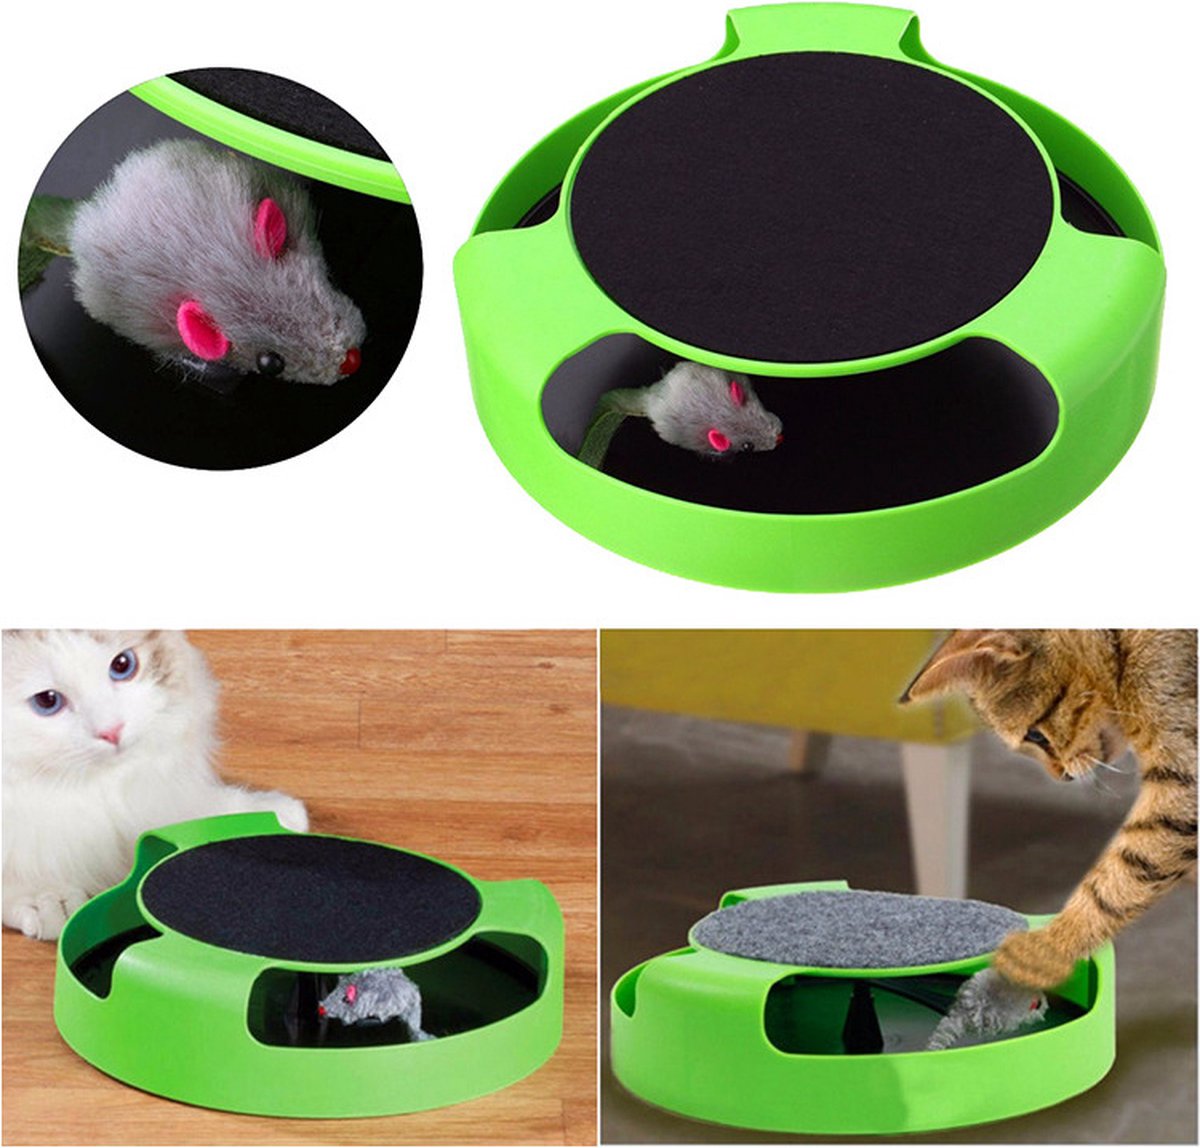 Pecute® Katten Speelwiel Met Muis- Interactief Kattenspeelgoed - Speelgoed Kat - Katten Speelgoed Voor Katten - Groen